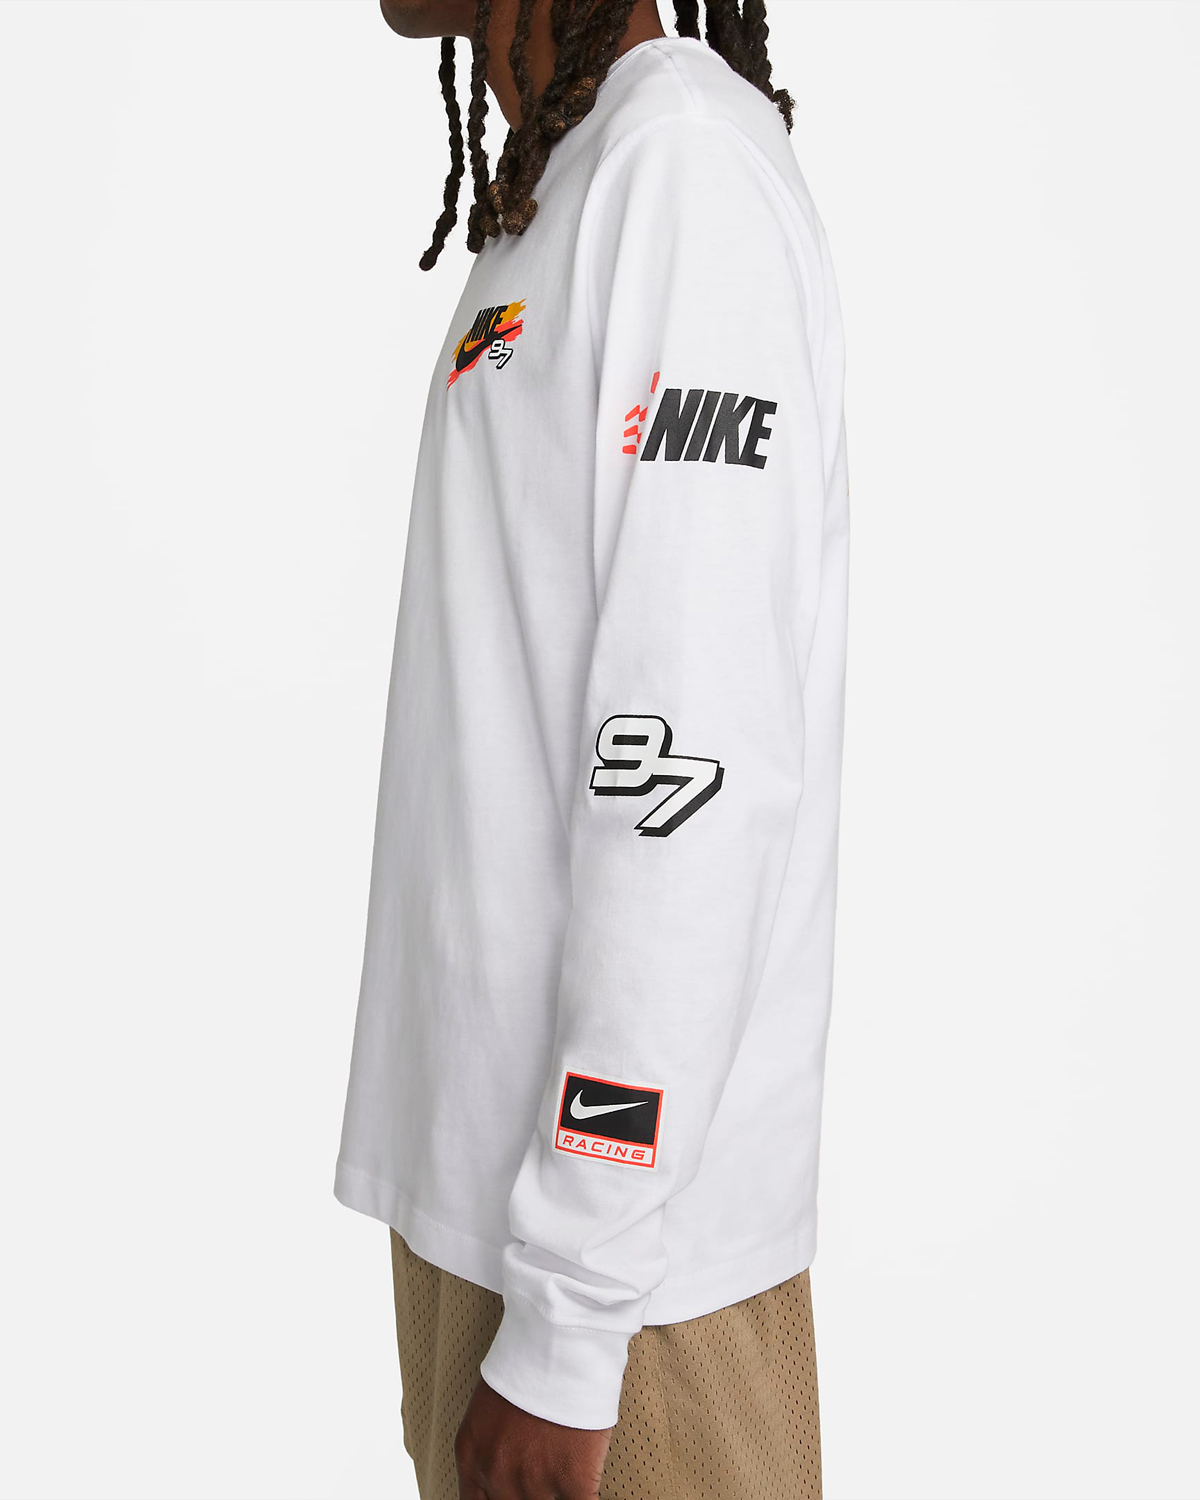 Nike-Air-Max-97-Long-Sleeve-T-Shirt-White-5